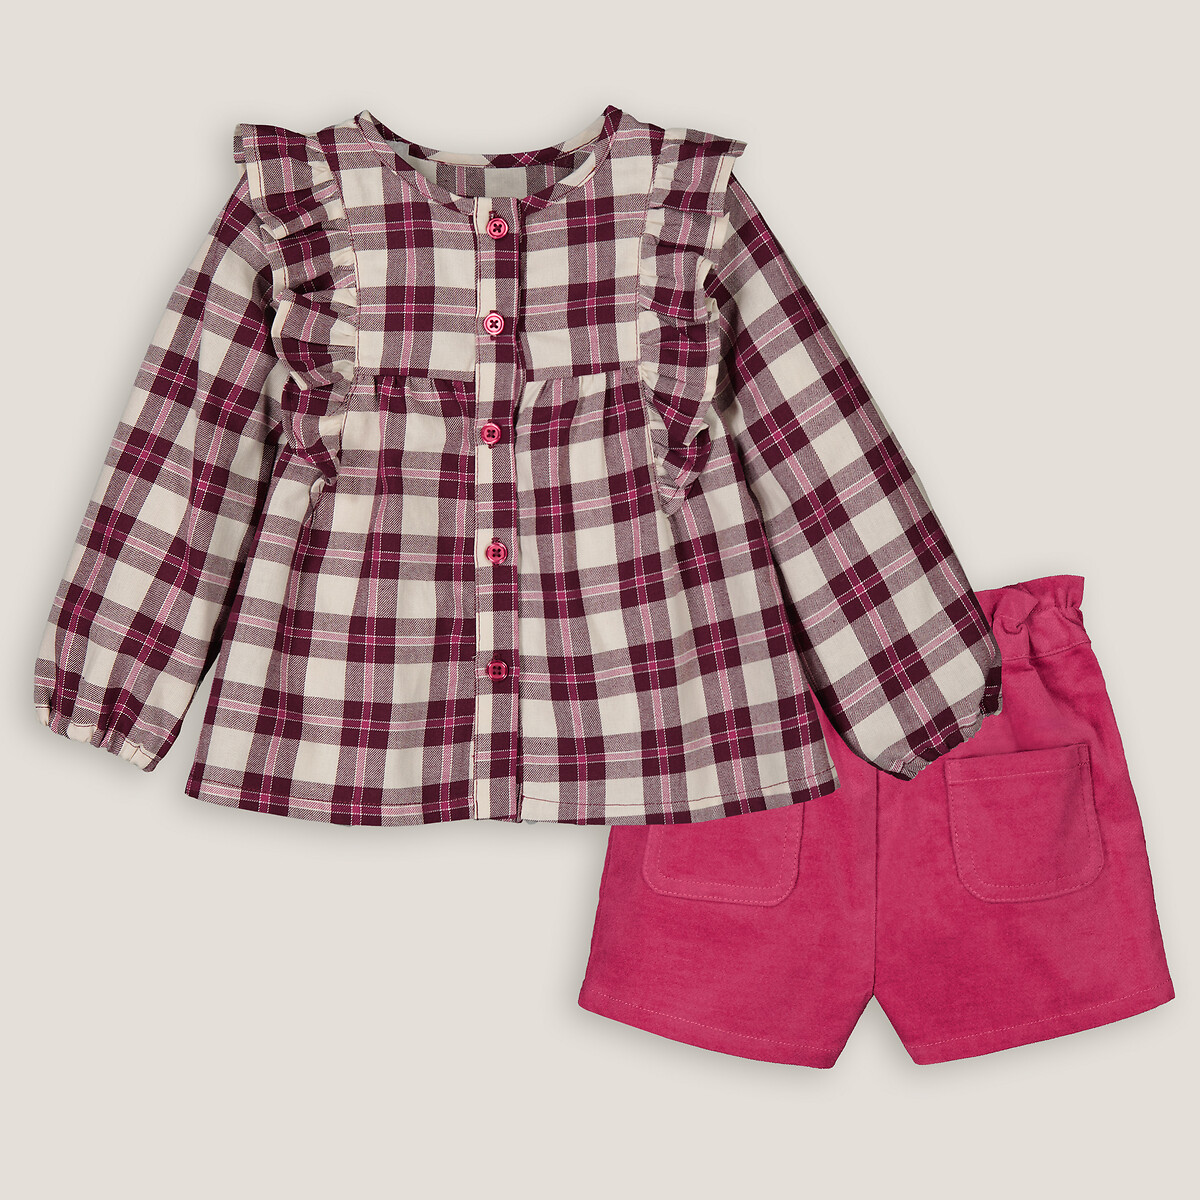 Комплект из двух вещей блузка и шорты 5 лет - 108 см розовый комплект из двух предметов блузки и шорт с вышивкой гладью 5 лет 108 см синий